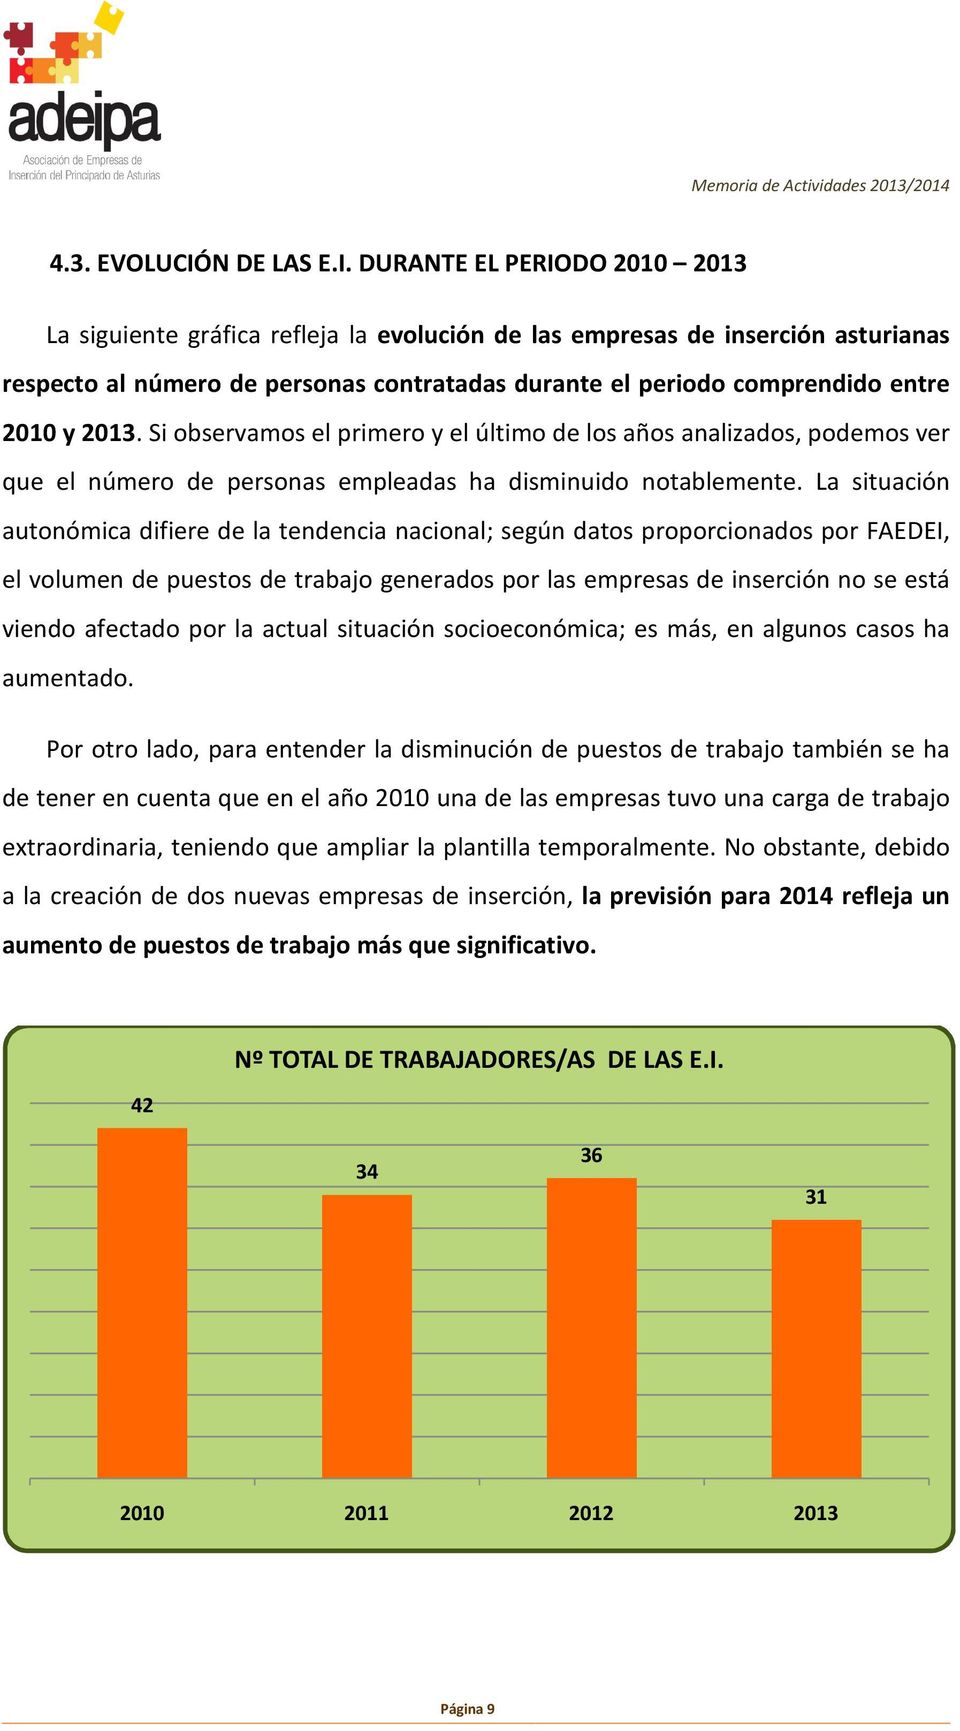 DURANTE EL PERIODO 2010 2013 La siguiente gráfica refleja la evolución de las empresas de inserción asturianas respecto al número de personas contratadas durante el periodo comprendido entre 2010 y